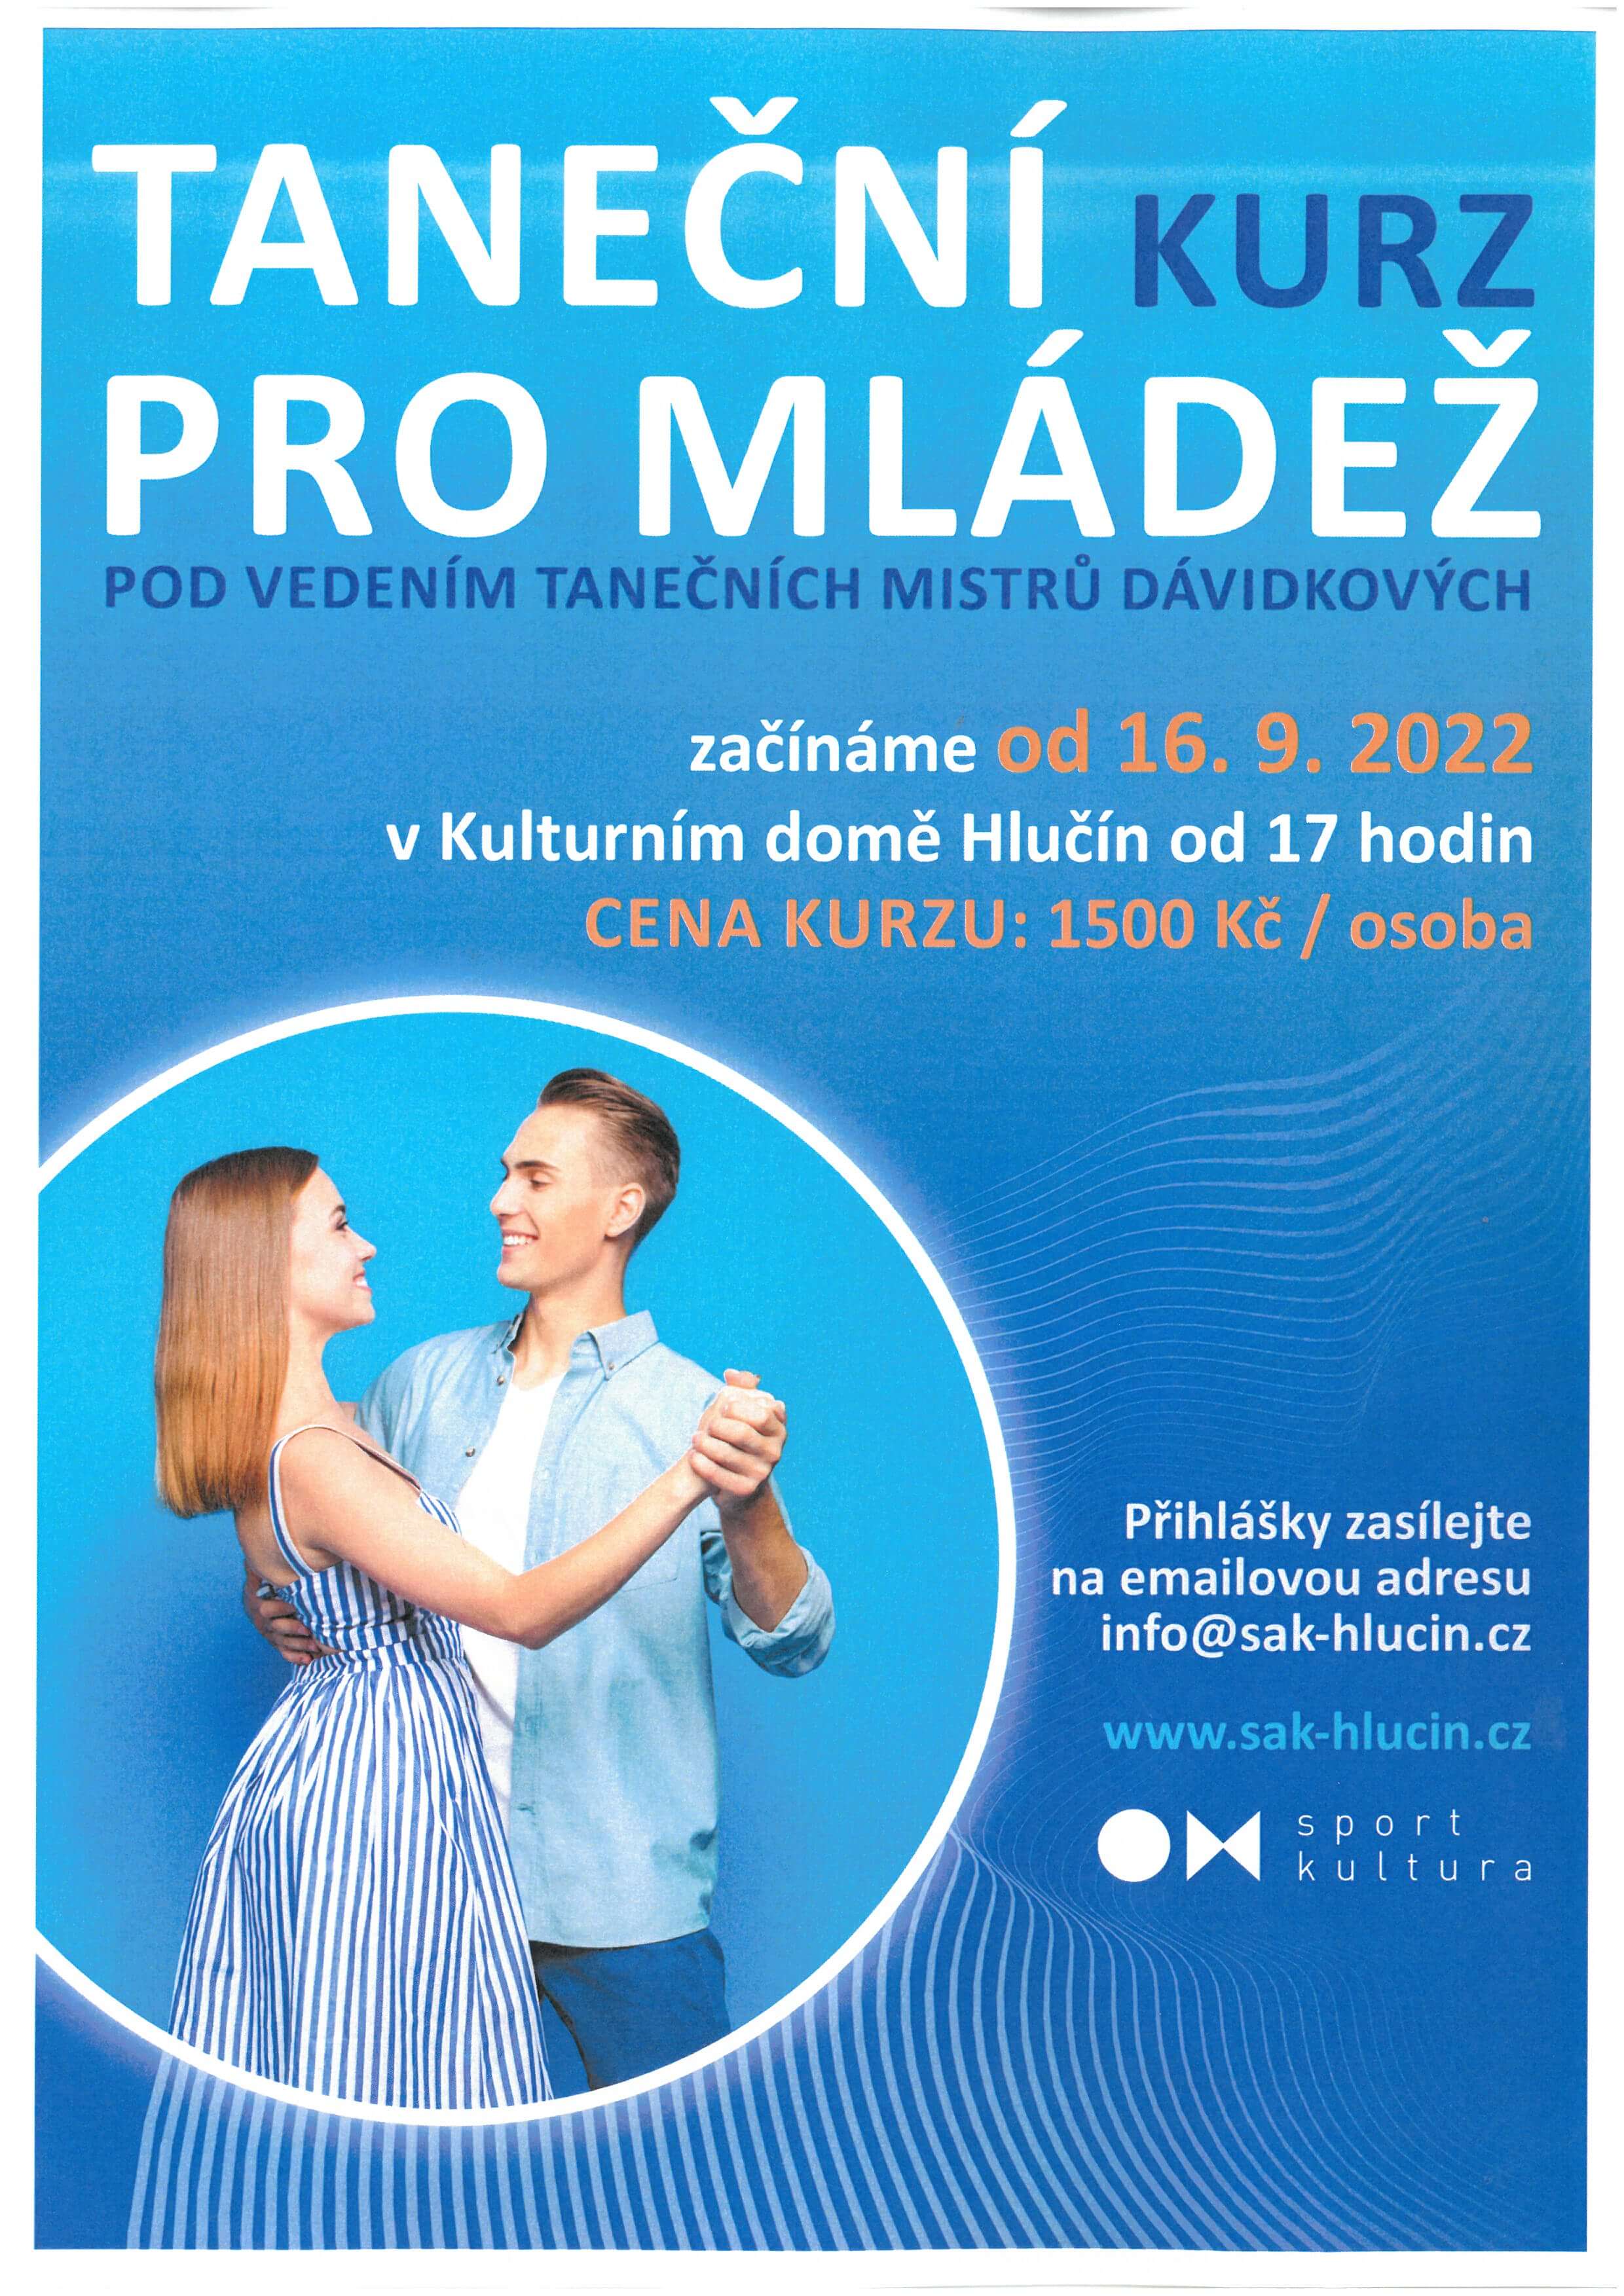 Taneční kurz pro mládež od 16. 9. 2022 v KD Hlučín 